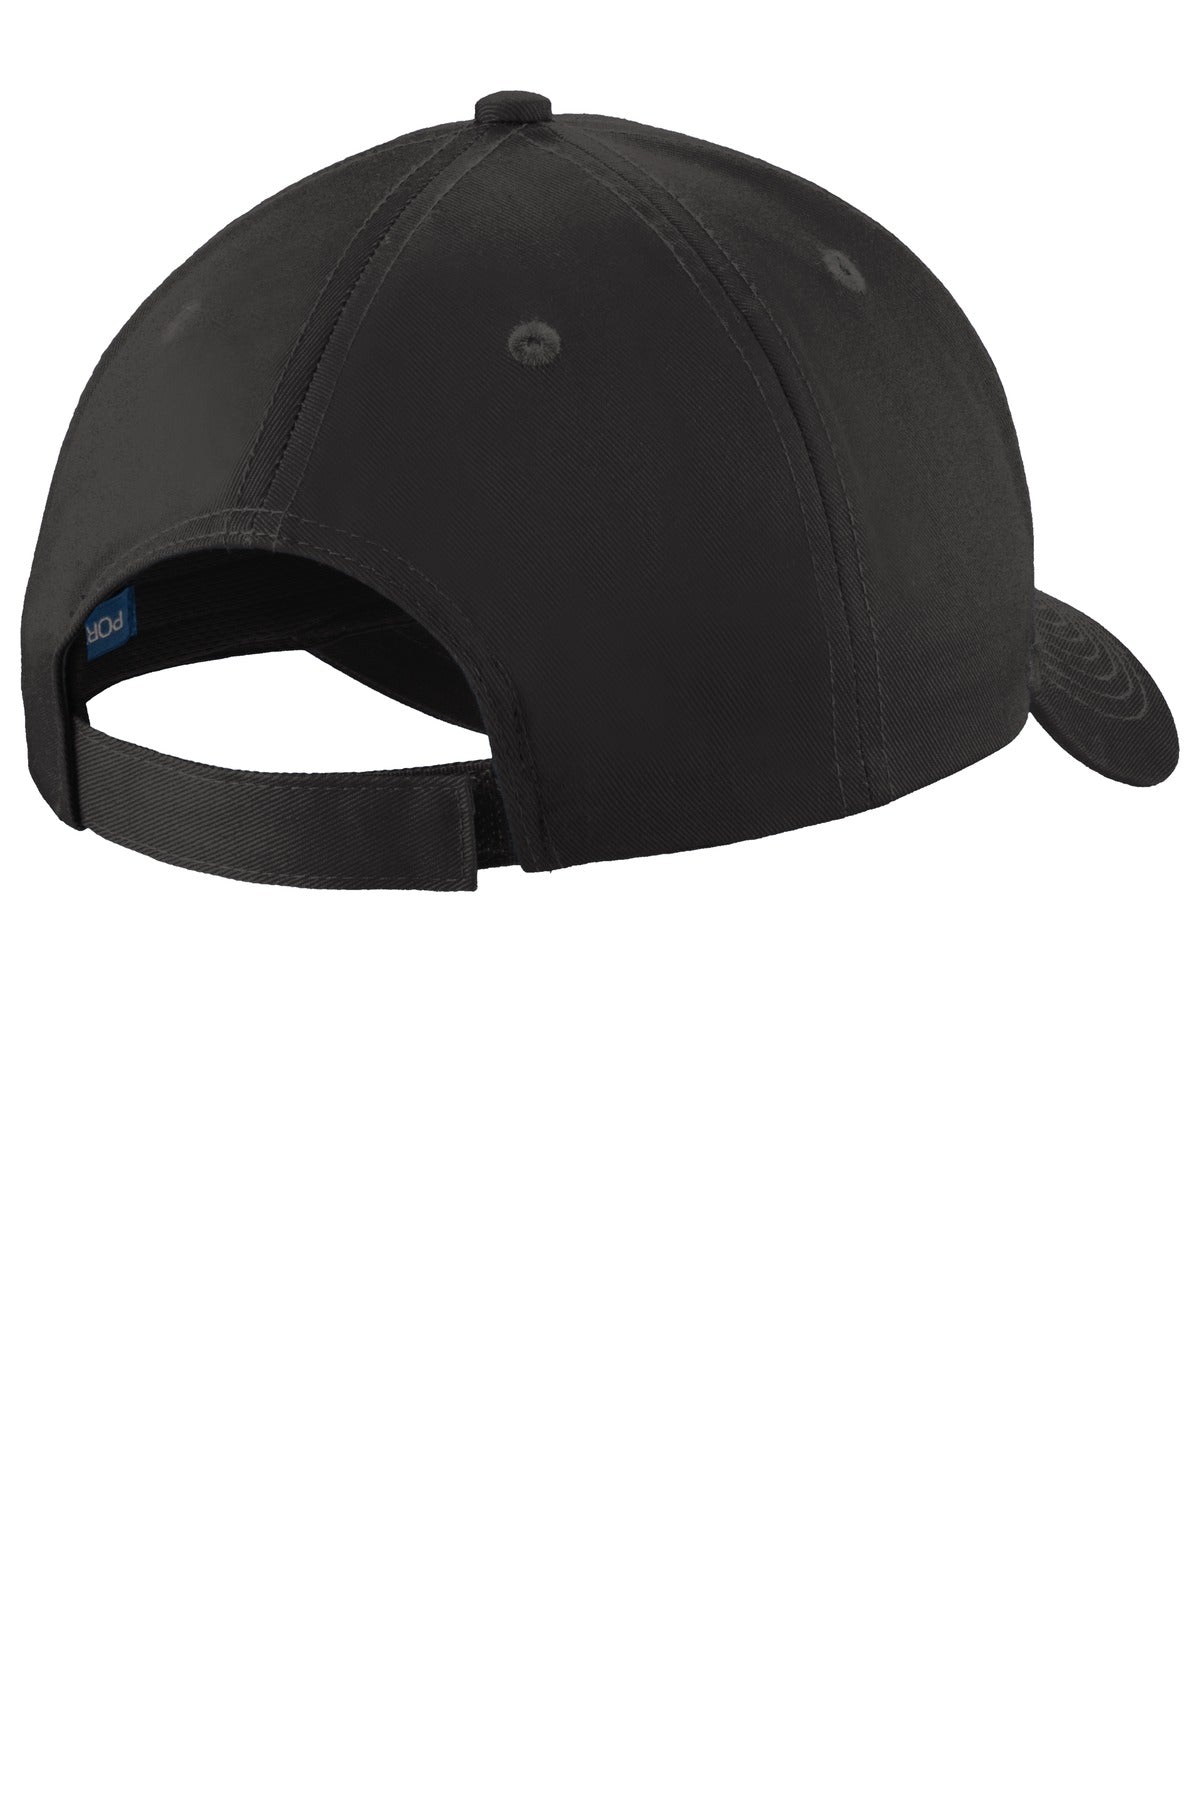 Port Authority® Uniforming Twill Cap. C913 - DFW Impression